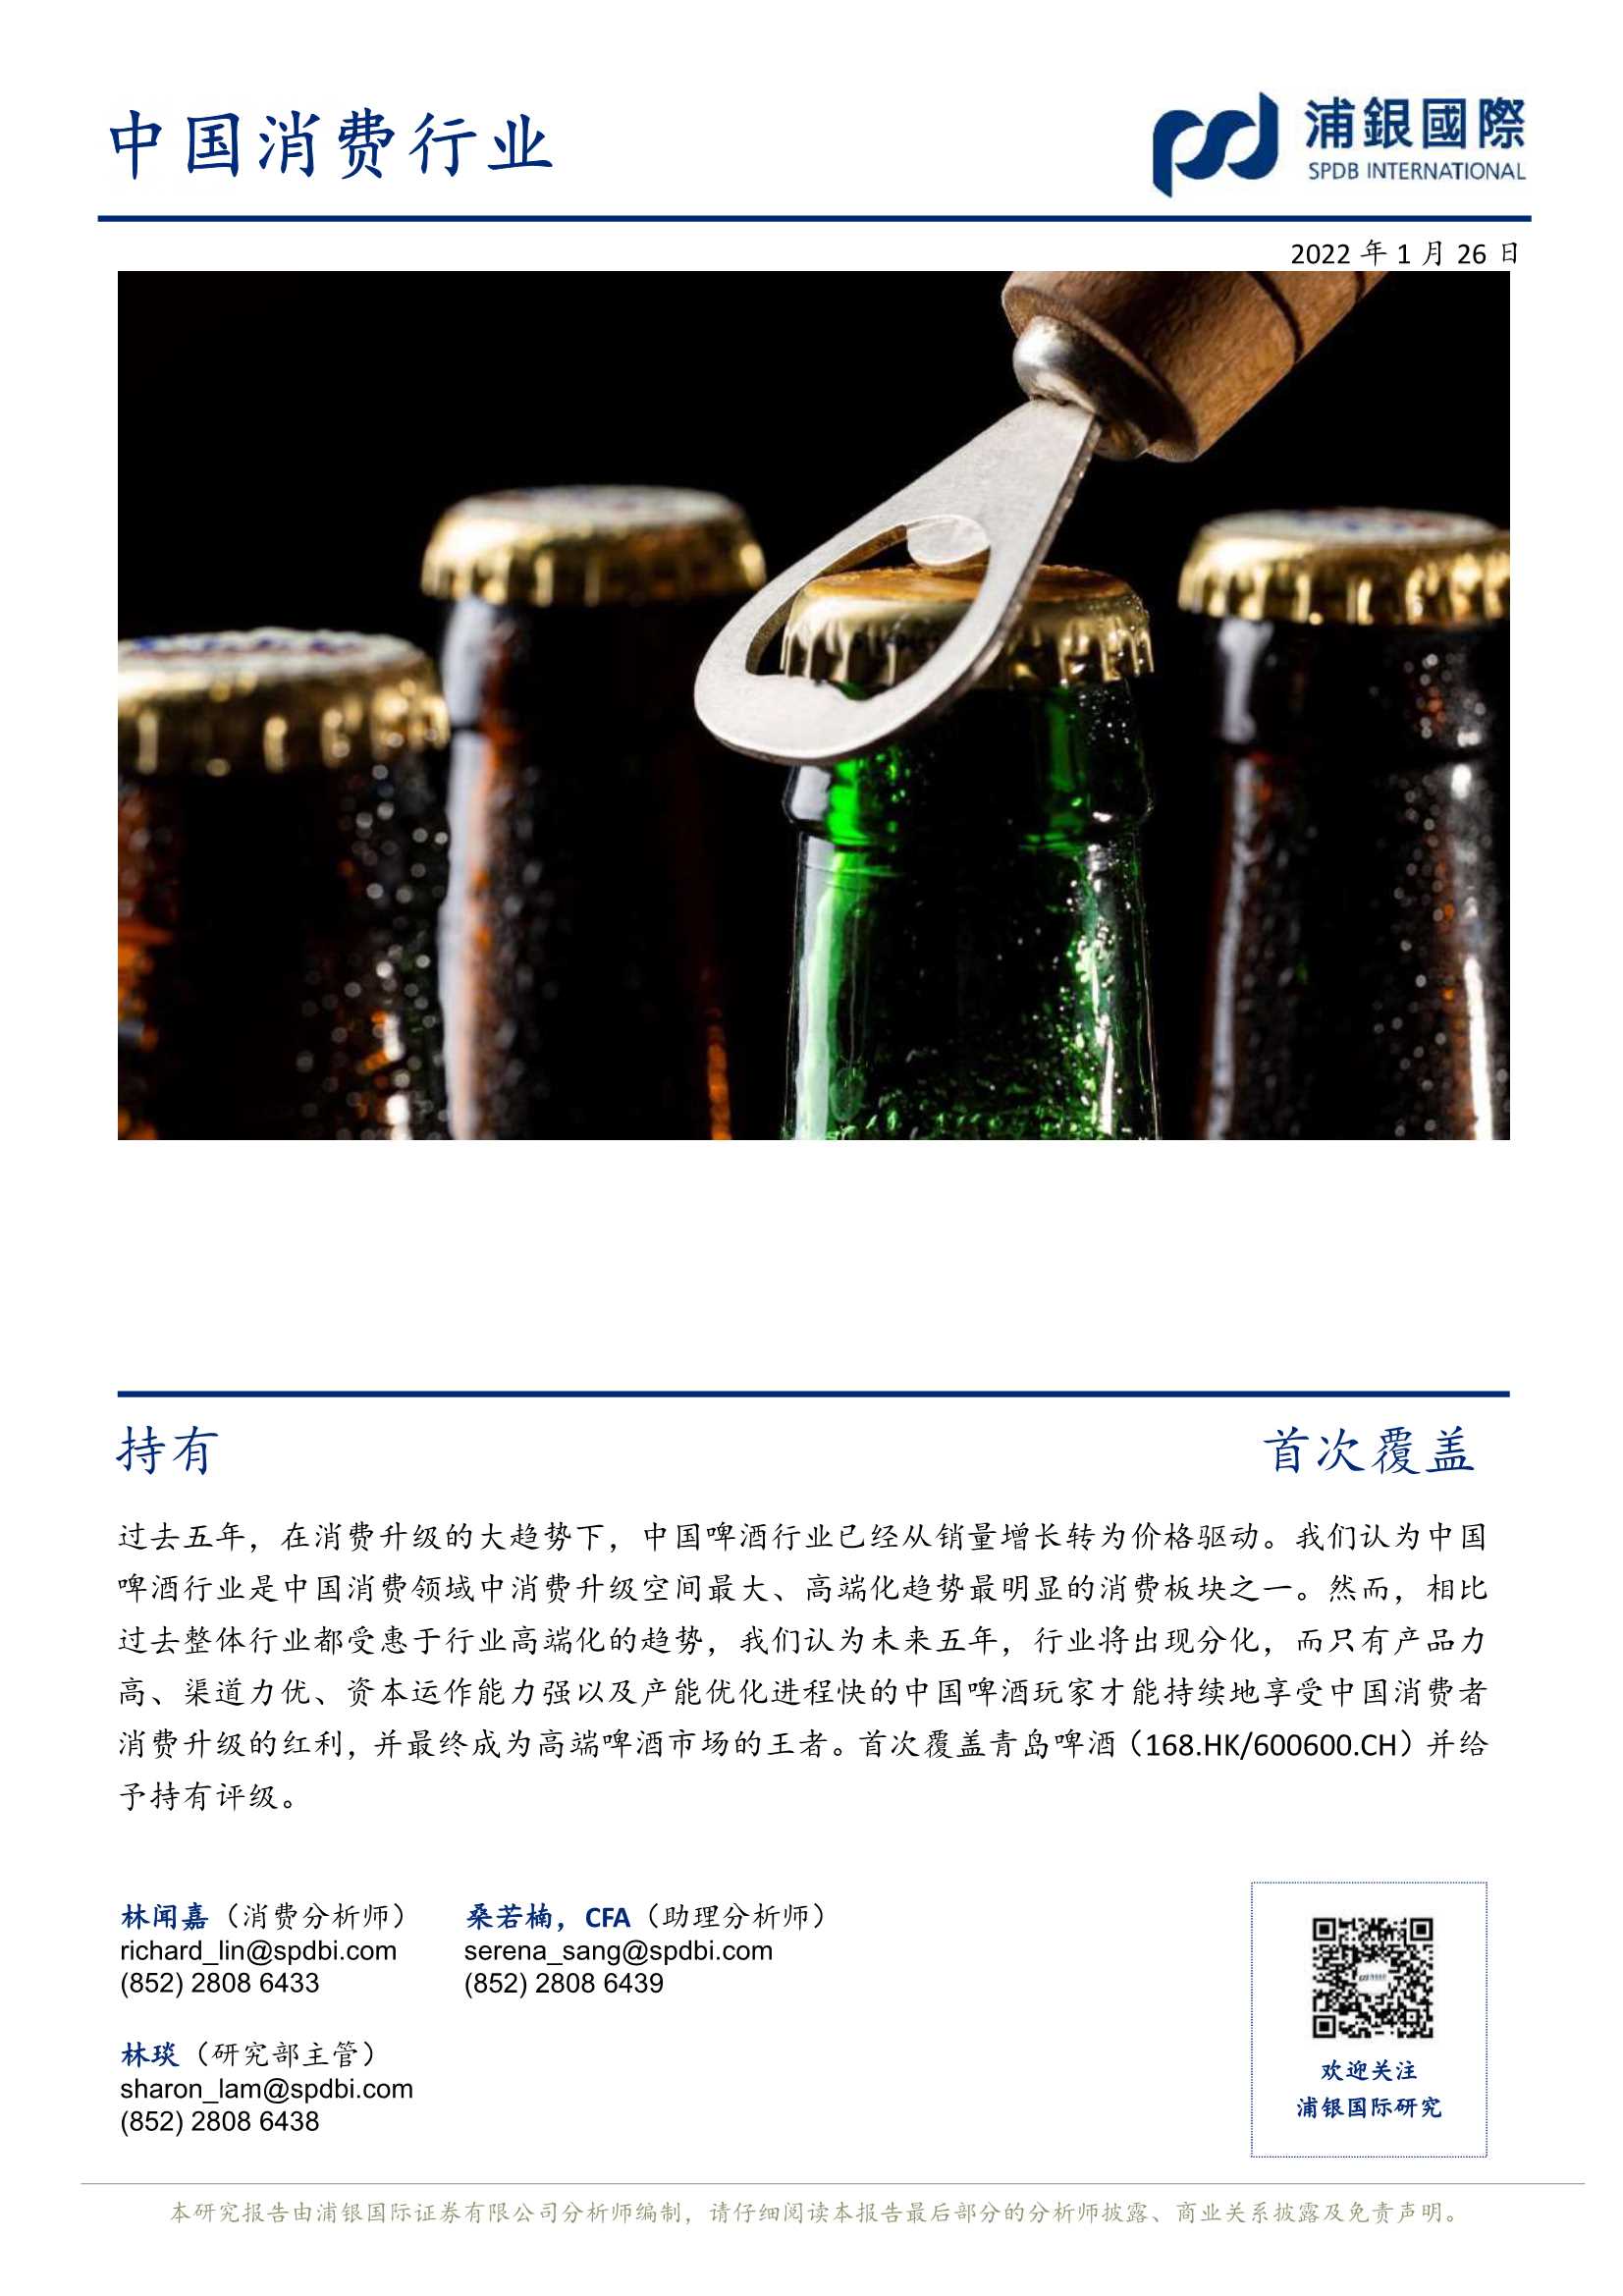 浦银国际-青岛啤酒-600600-百年品牌复兴之路，道阻且长-20220126-39页